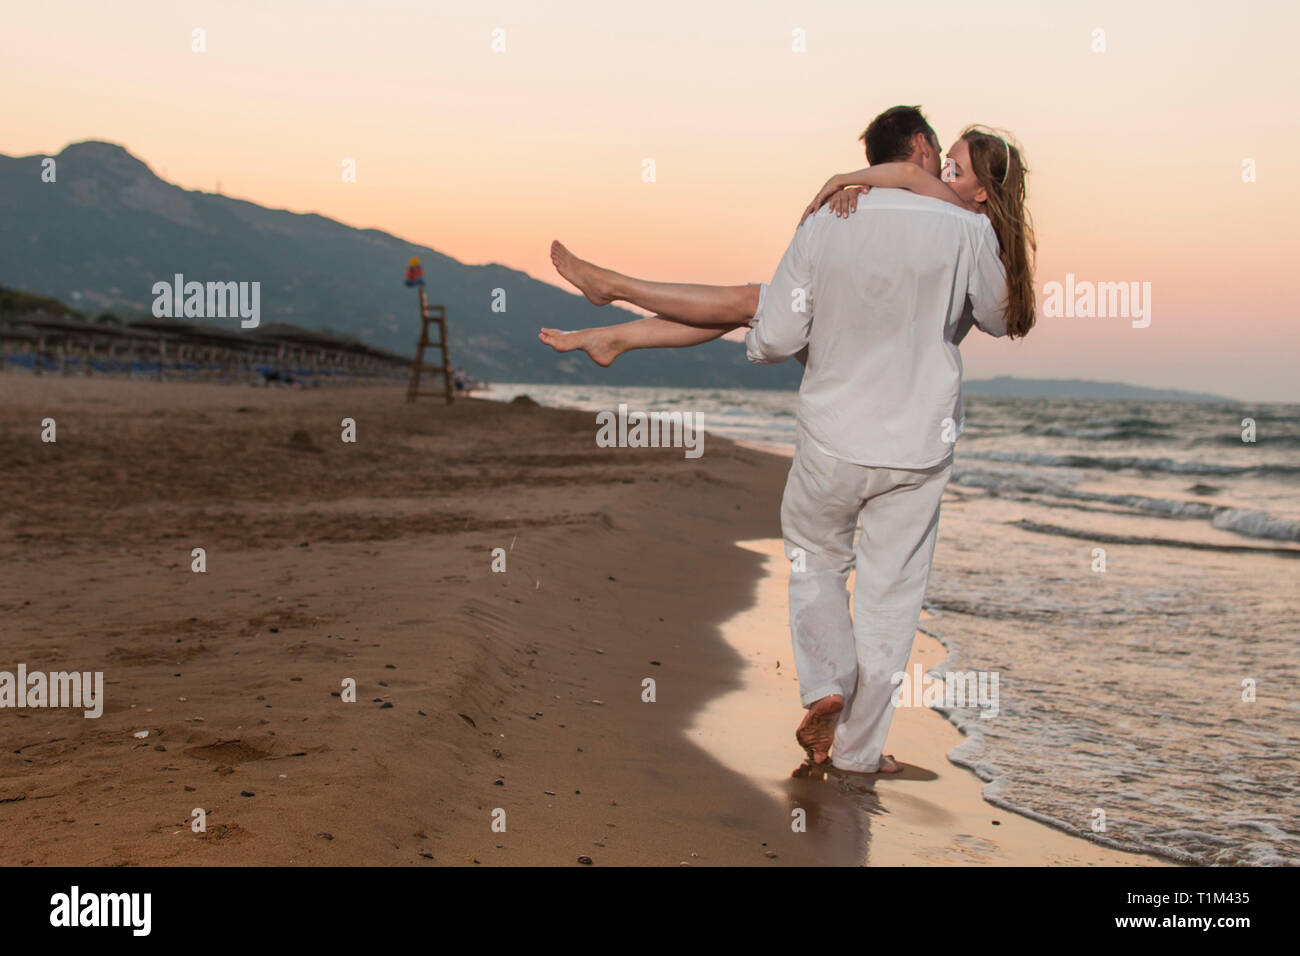 Vue romantique de l'homme qui porte sa bien-aimée femme en marchant à travers les mains de sable et ils s'embrassent. Magnifique paysage de bord de mer au coucher du soleil. Banque D'Images